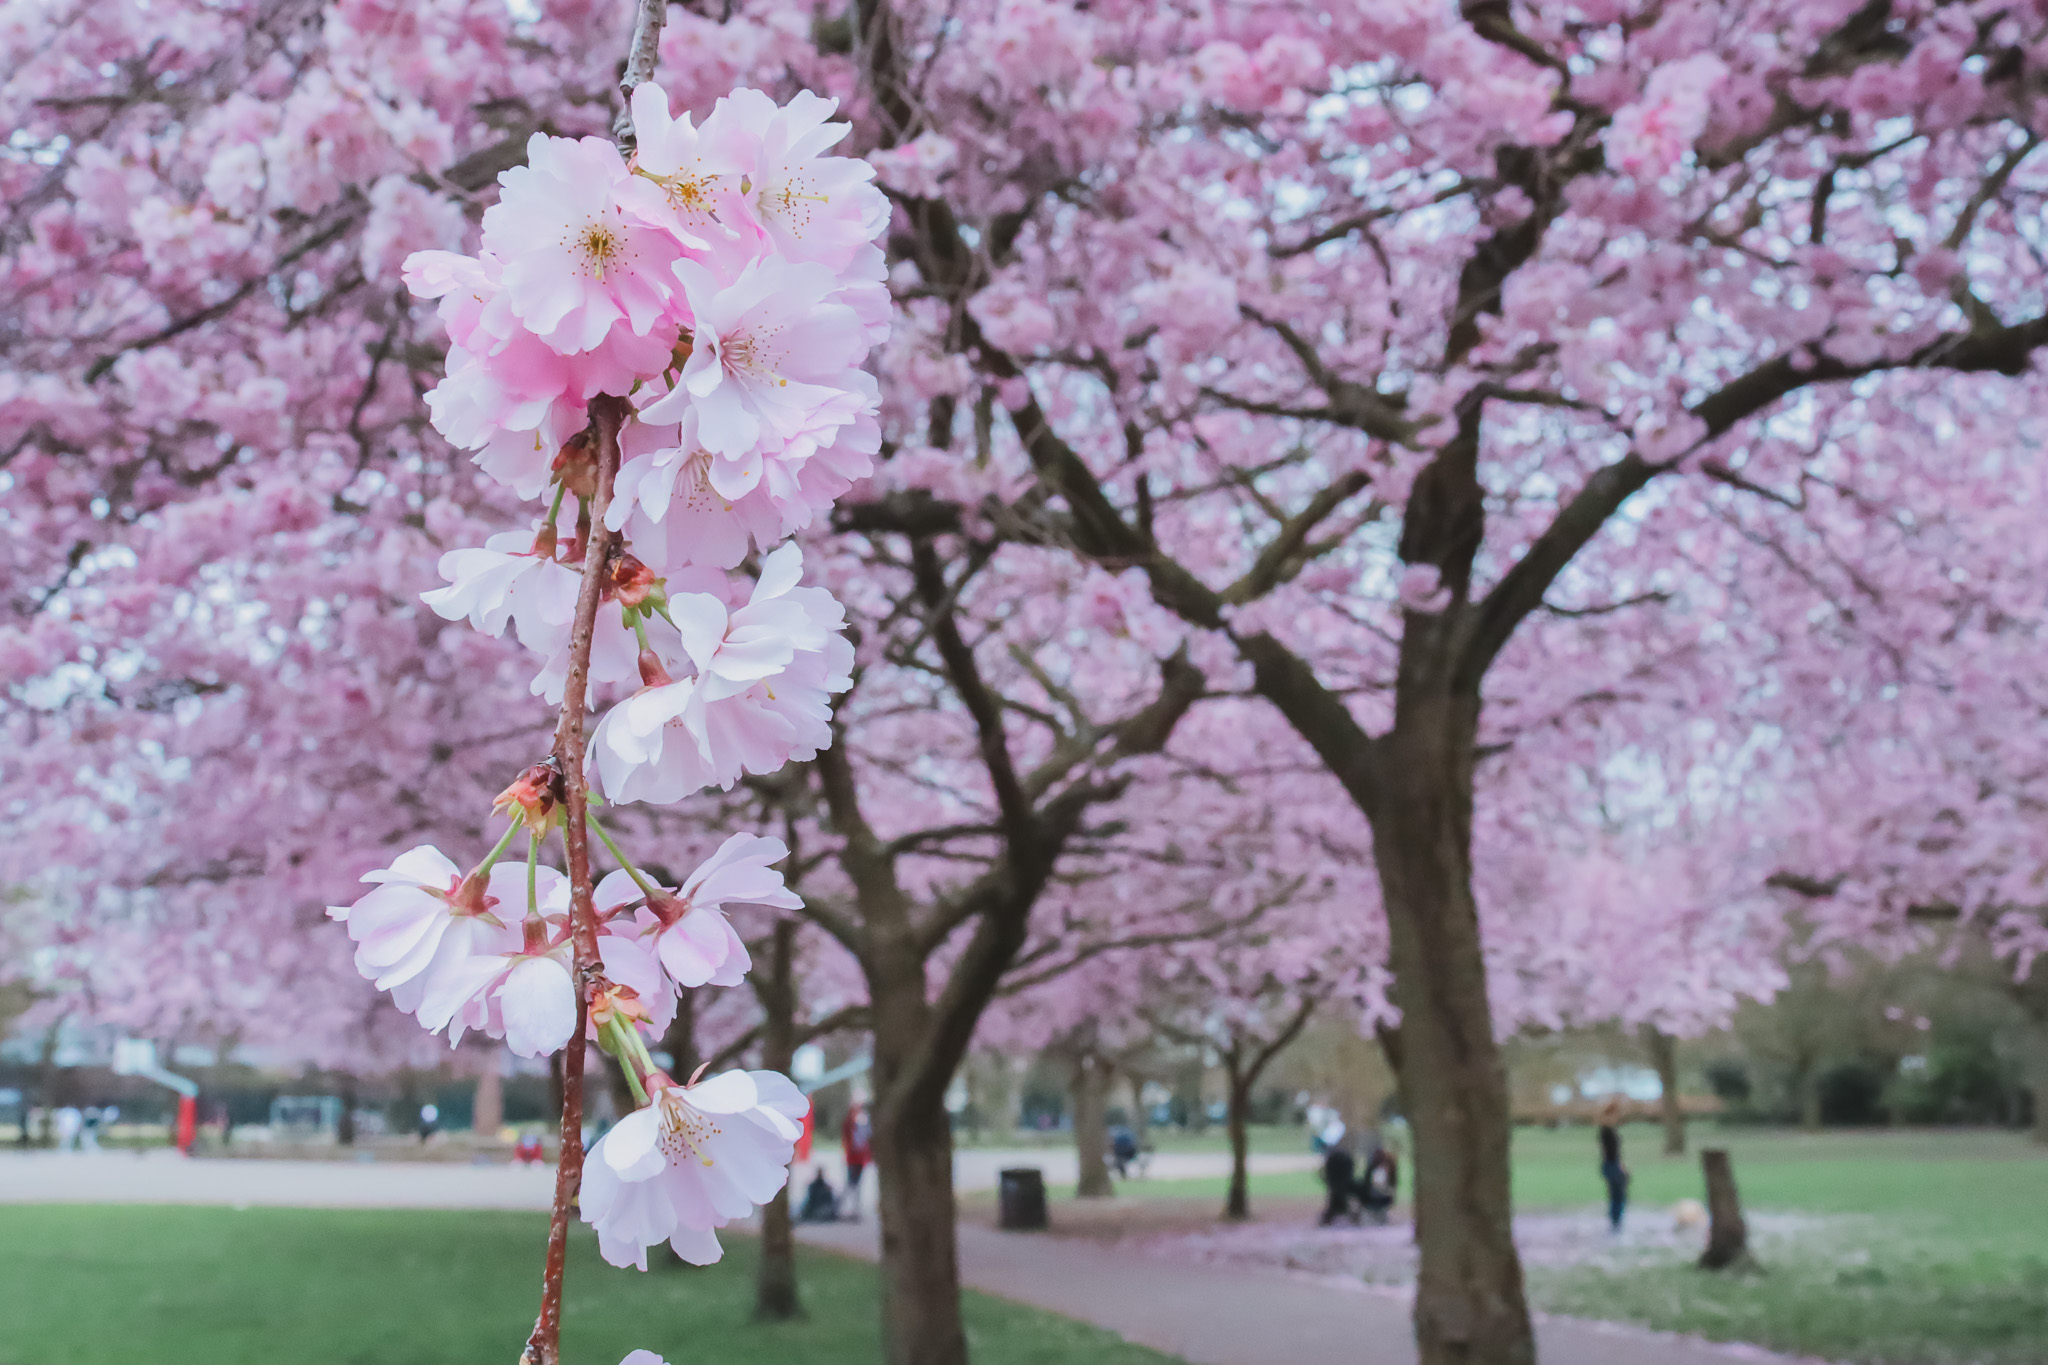 Cherry blossoms at Ravenscourt Park, London